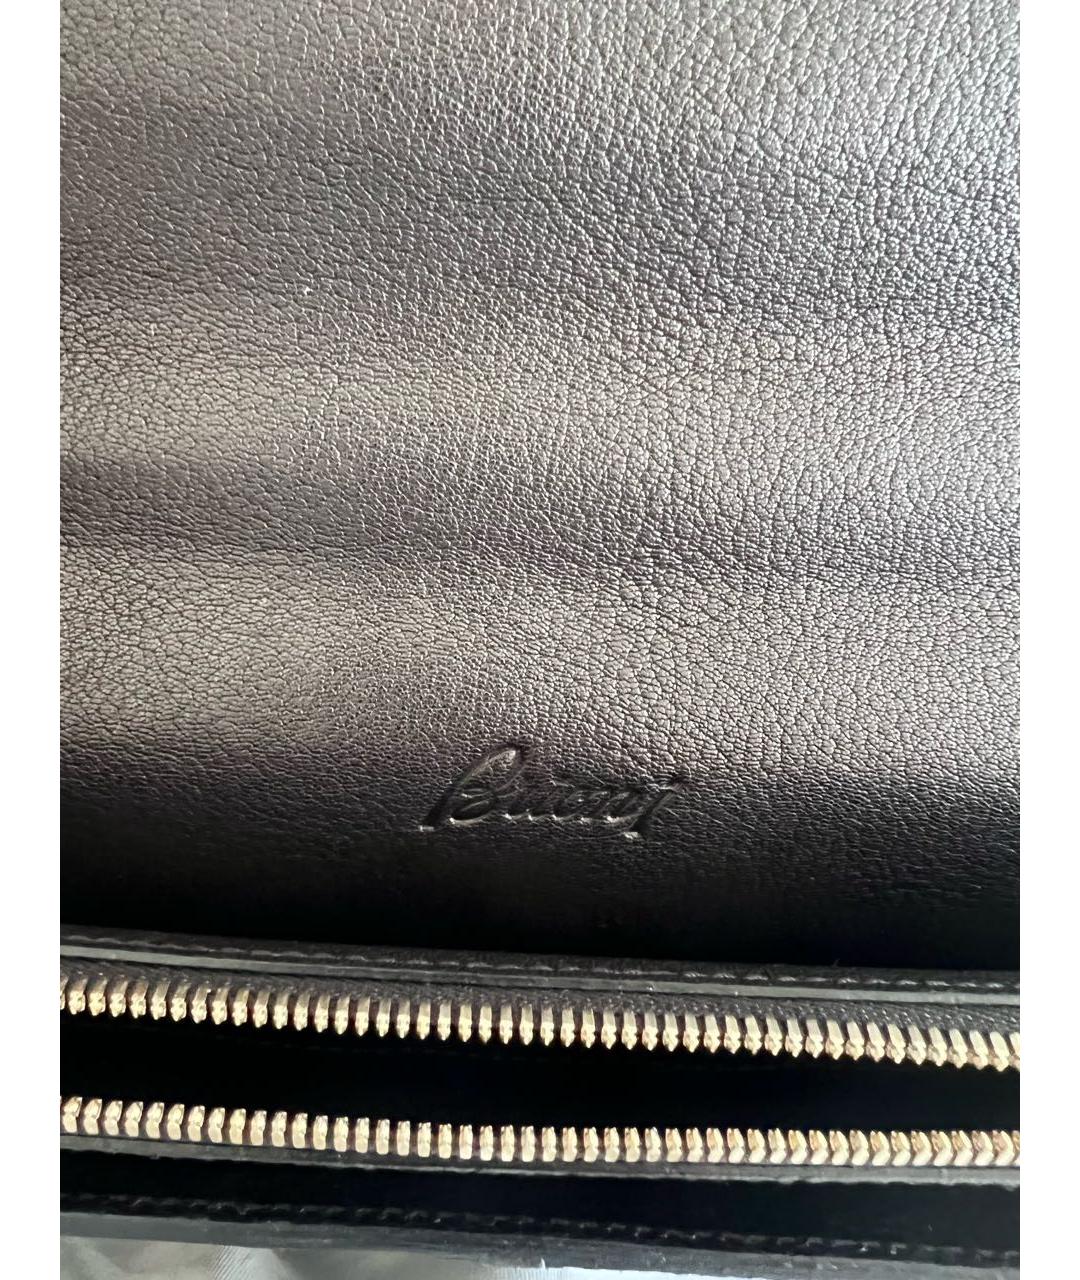 BRIONI Черный кожаный портфель, фото 3